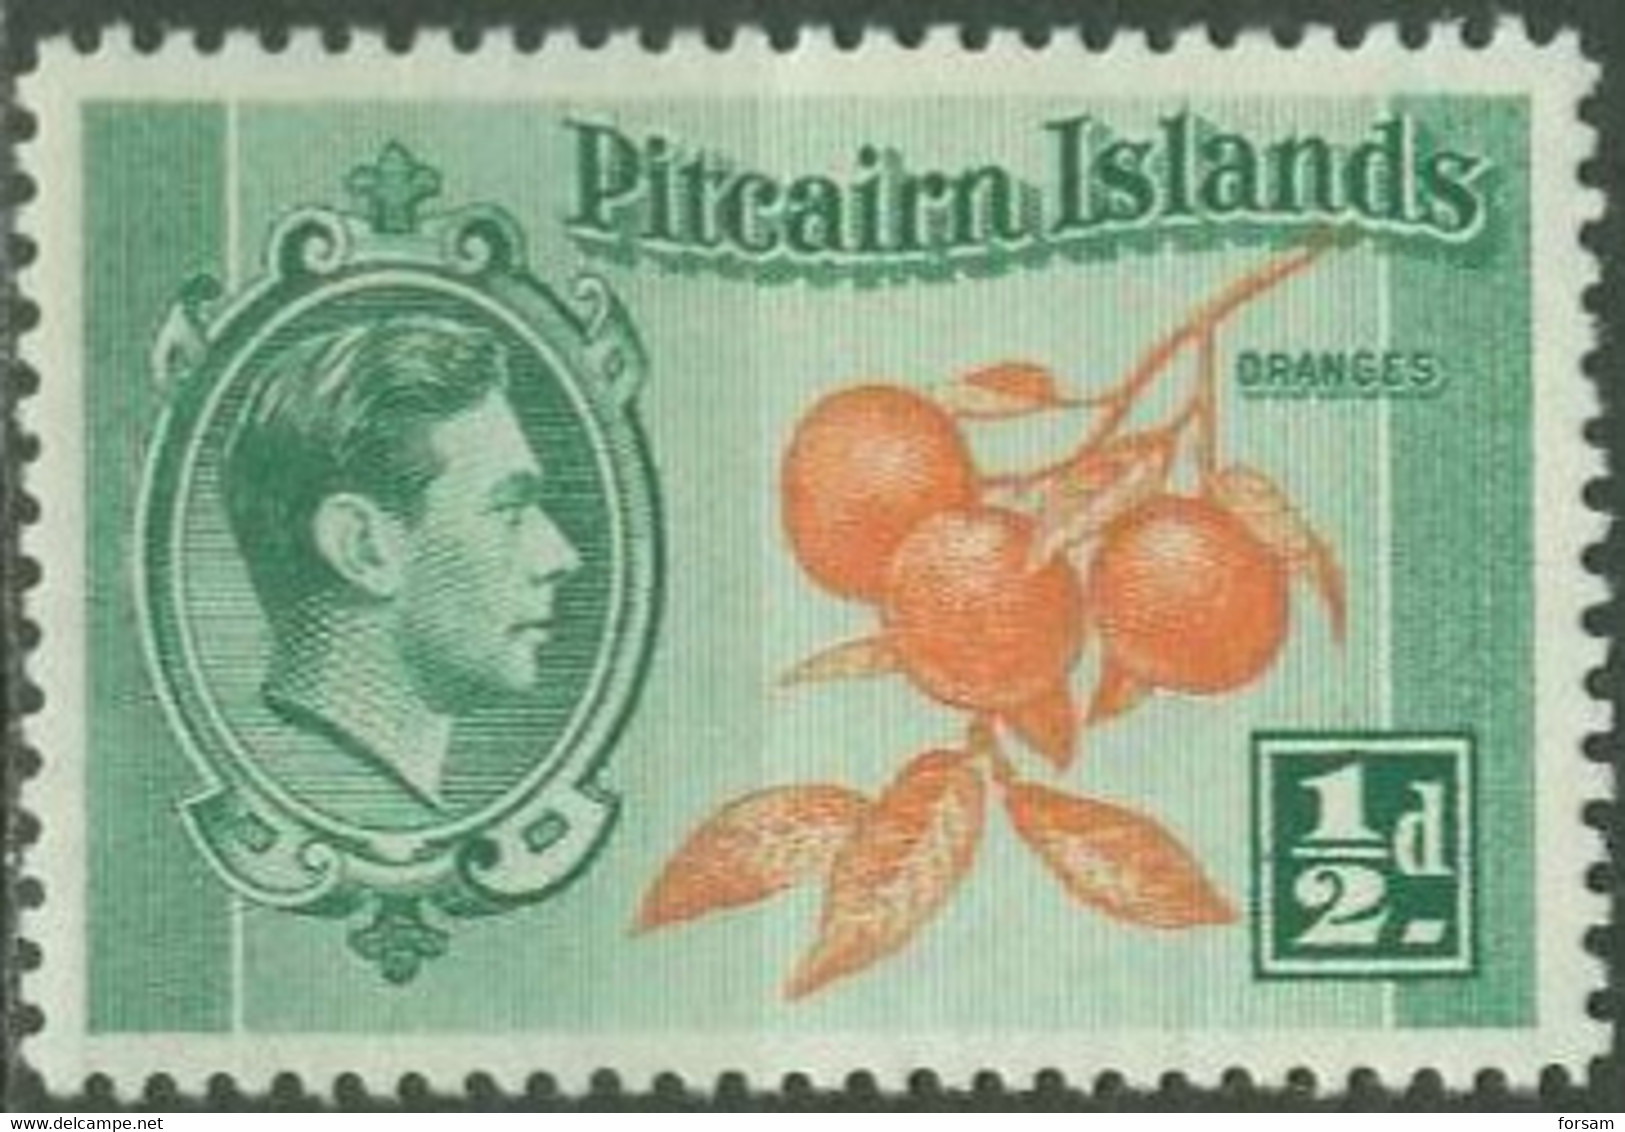 PITCAIRN ISLANDS..1940..Michel # 1...MLH. - Pitcairn Islands